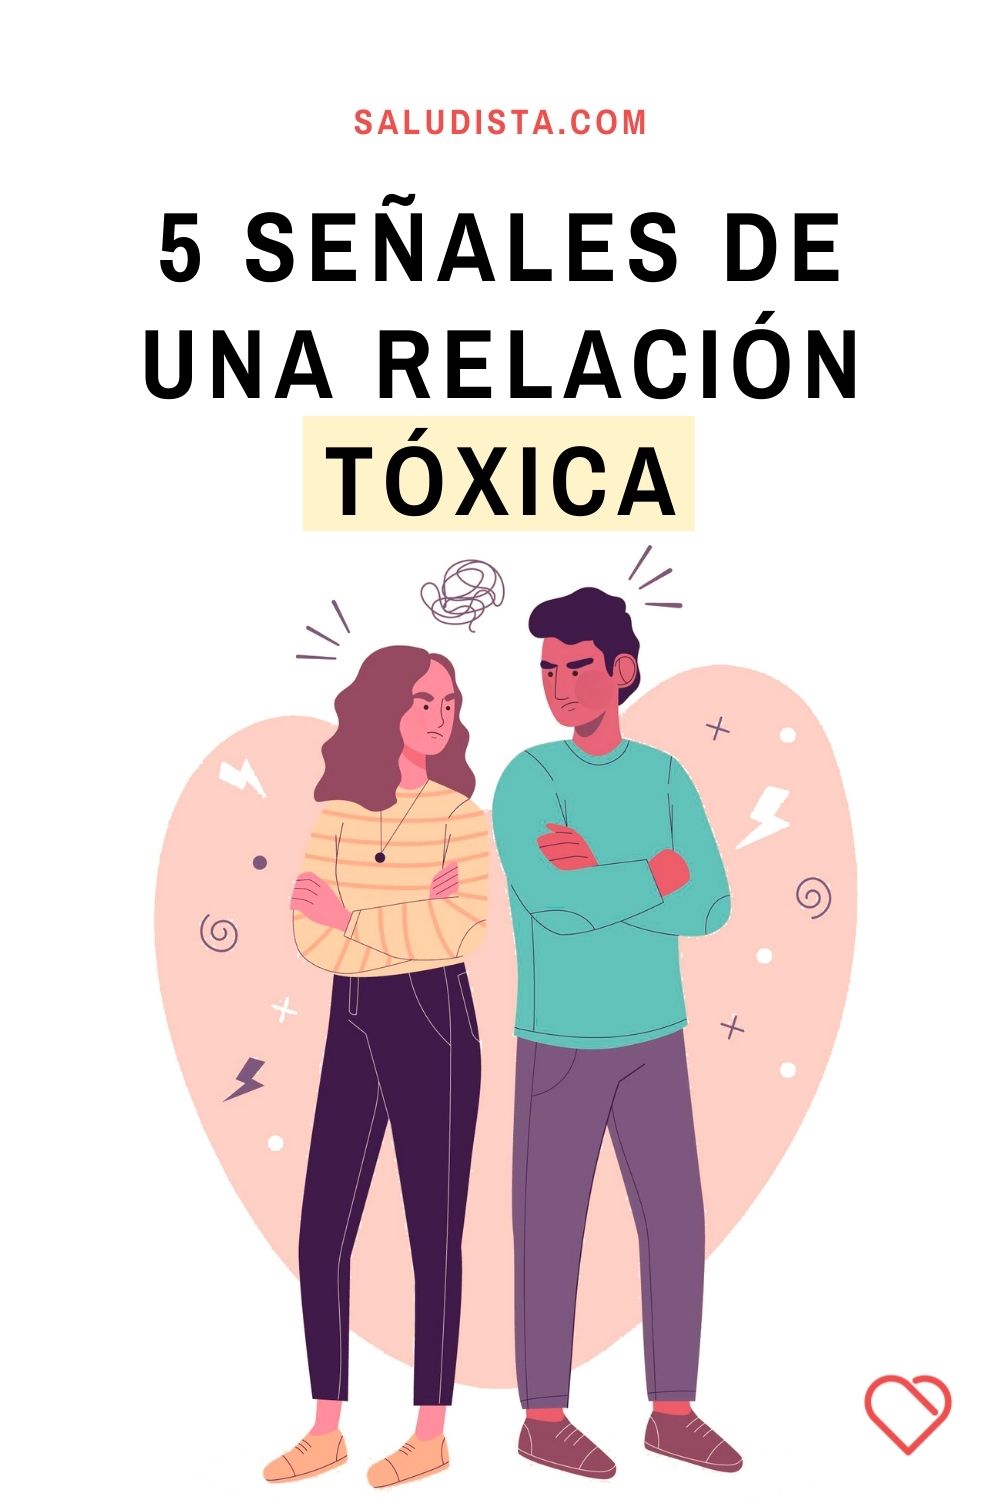 5 Señales de una relación tóxica